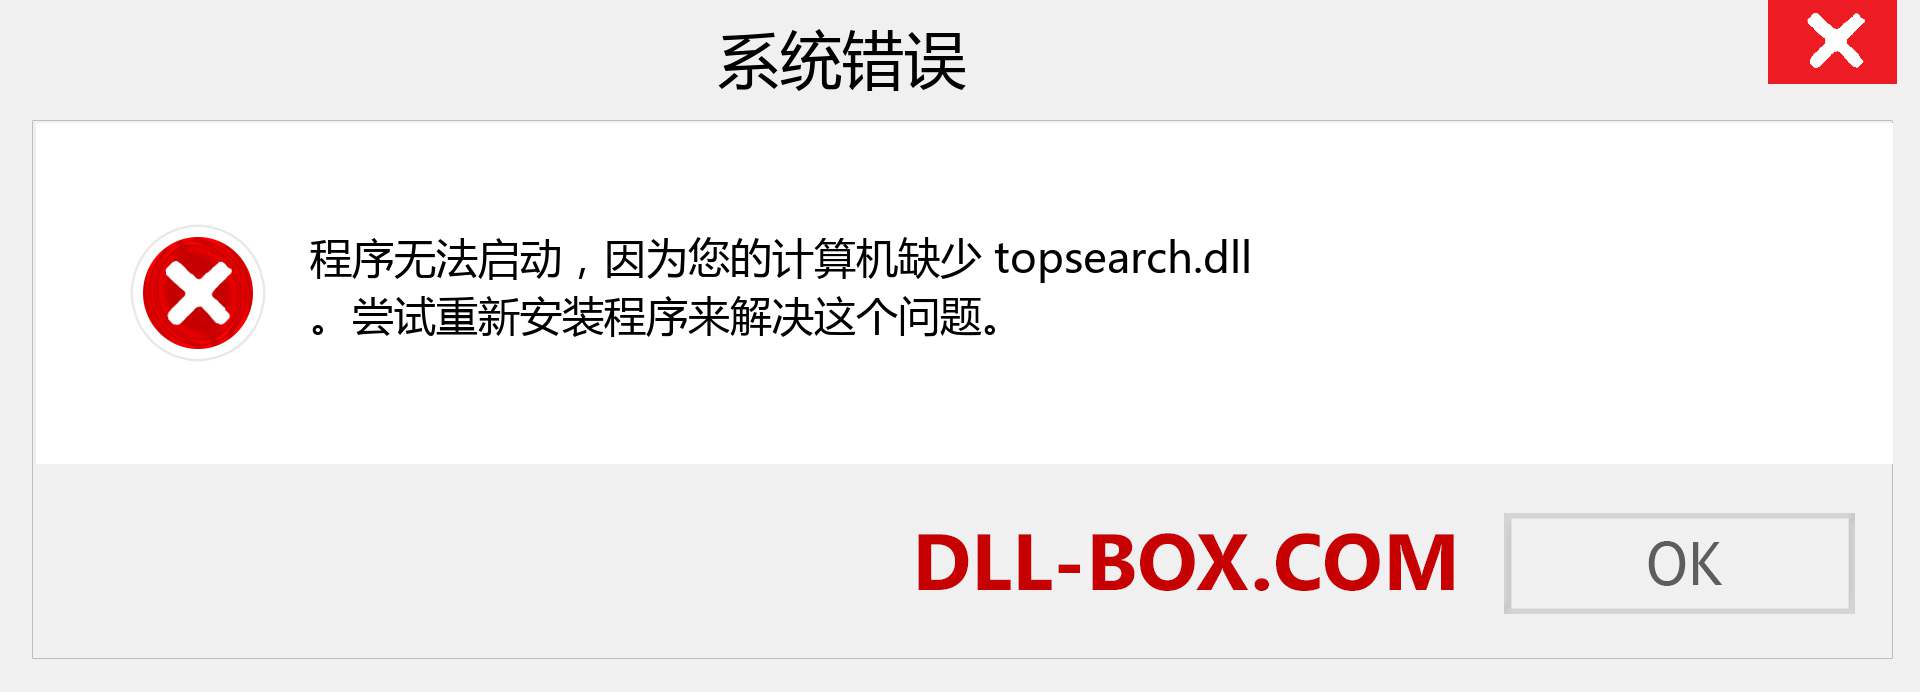 topsearch.dll 文件丢失？。 适用于 Windows 7、8、10 的下载 - 修复 Windows、照片、图像上的 topsearch dll 丢失错误